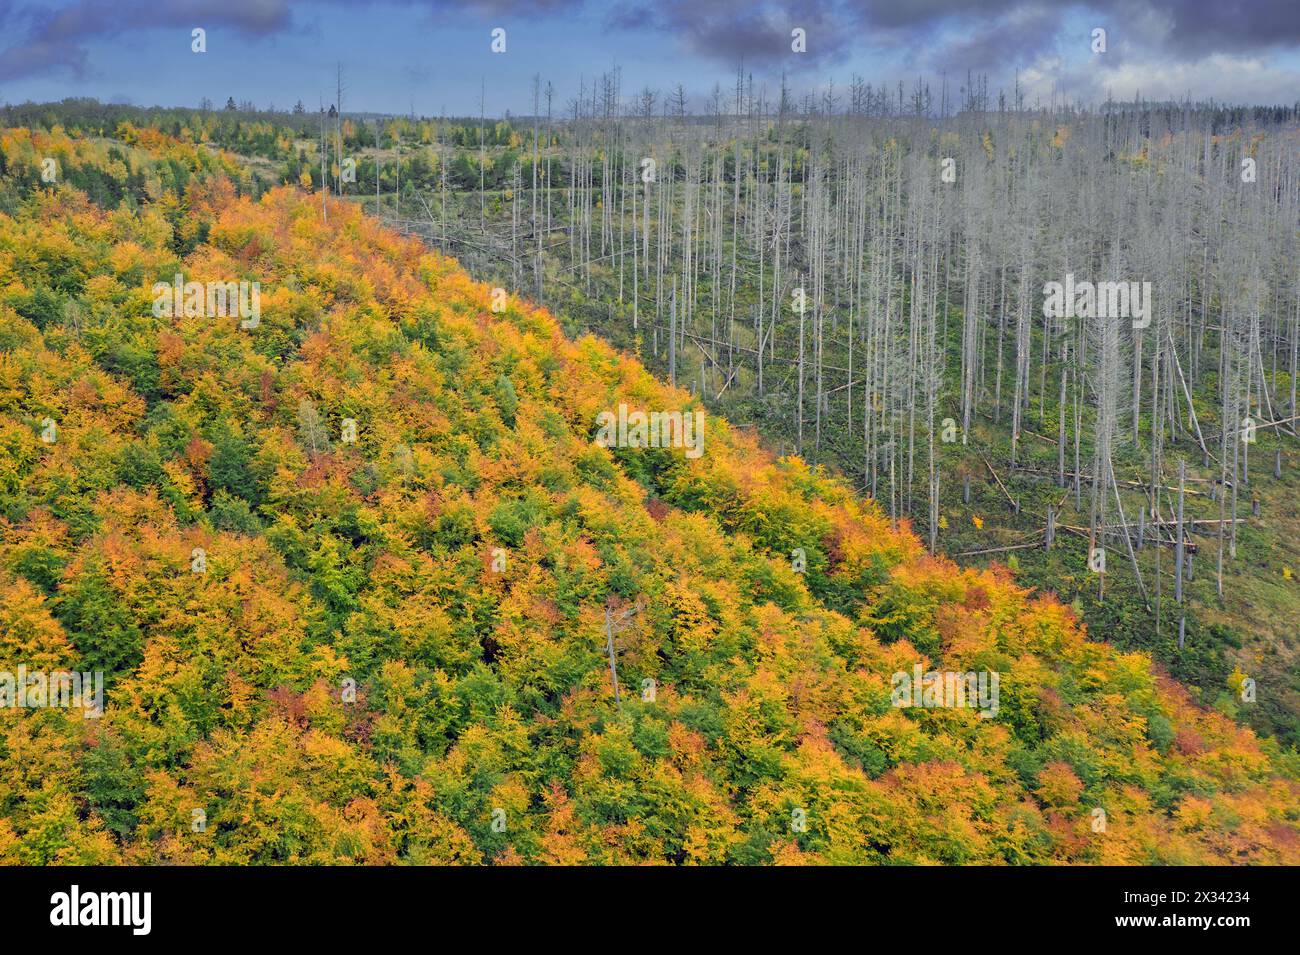 Forêt mixte à côté de la forêt d'épinettes mortes, destruction par l'infestation de coléoptères de l'épinette européenne (IPS typographus), parc national du Harz, Allemagne Banque D'Images